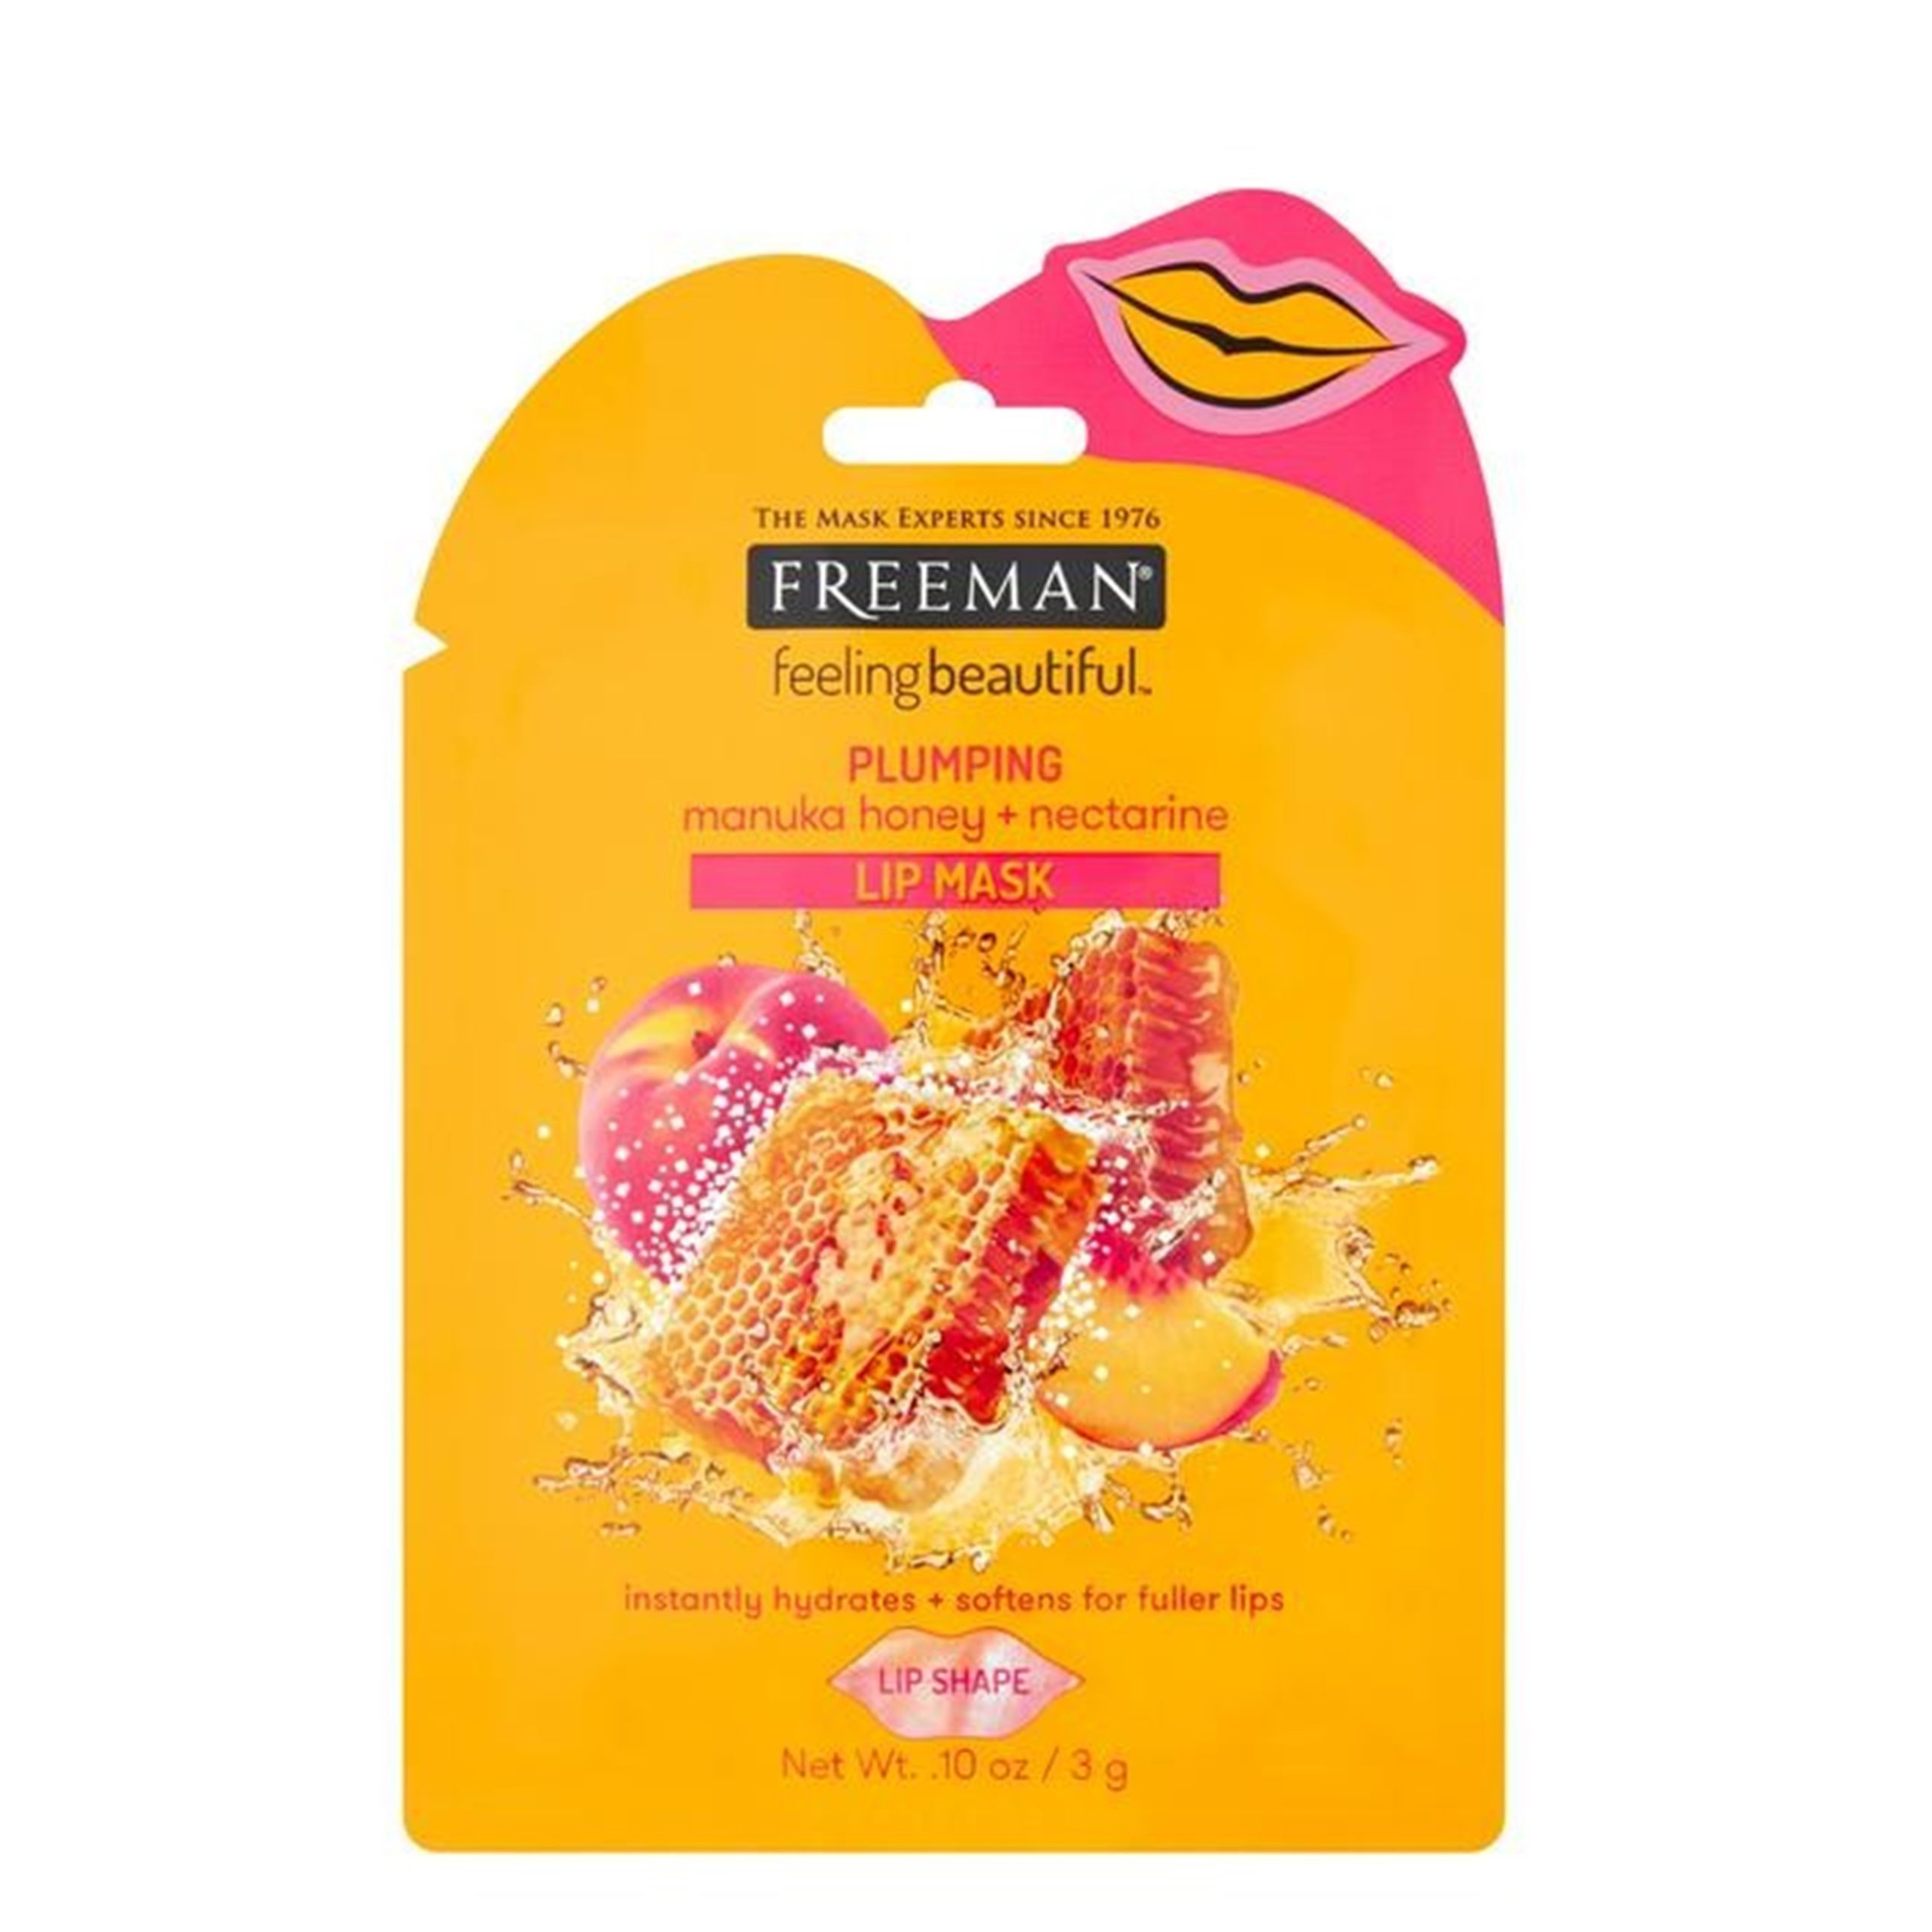 Freeman Plumping Manuka Honey & nectarine Lip Mask - Felicity Community ...